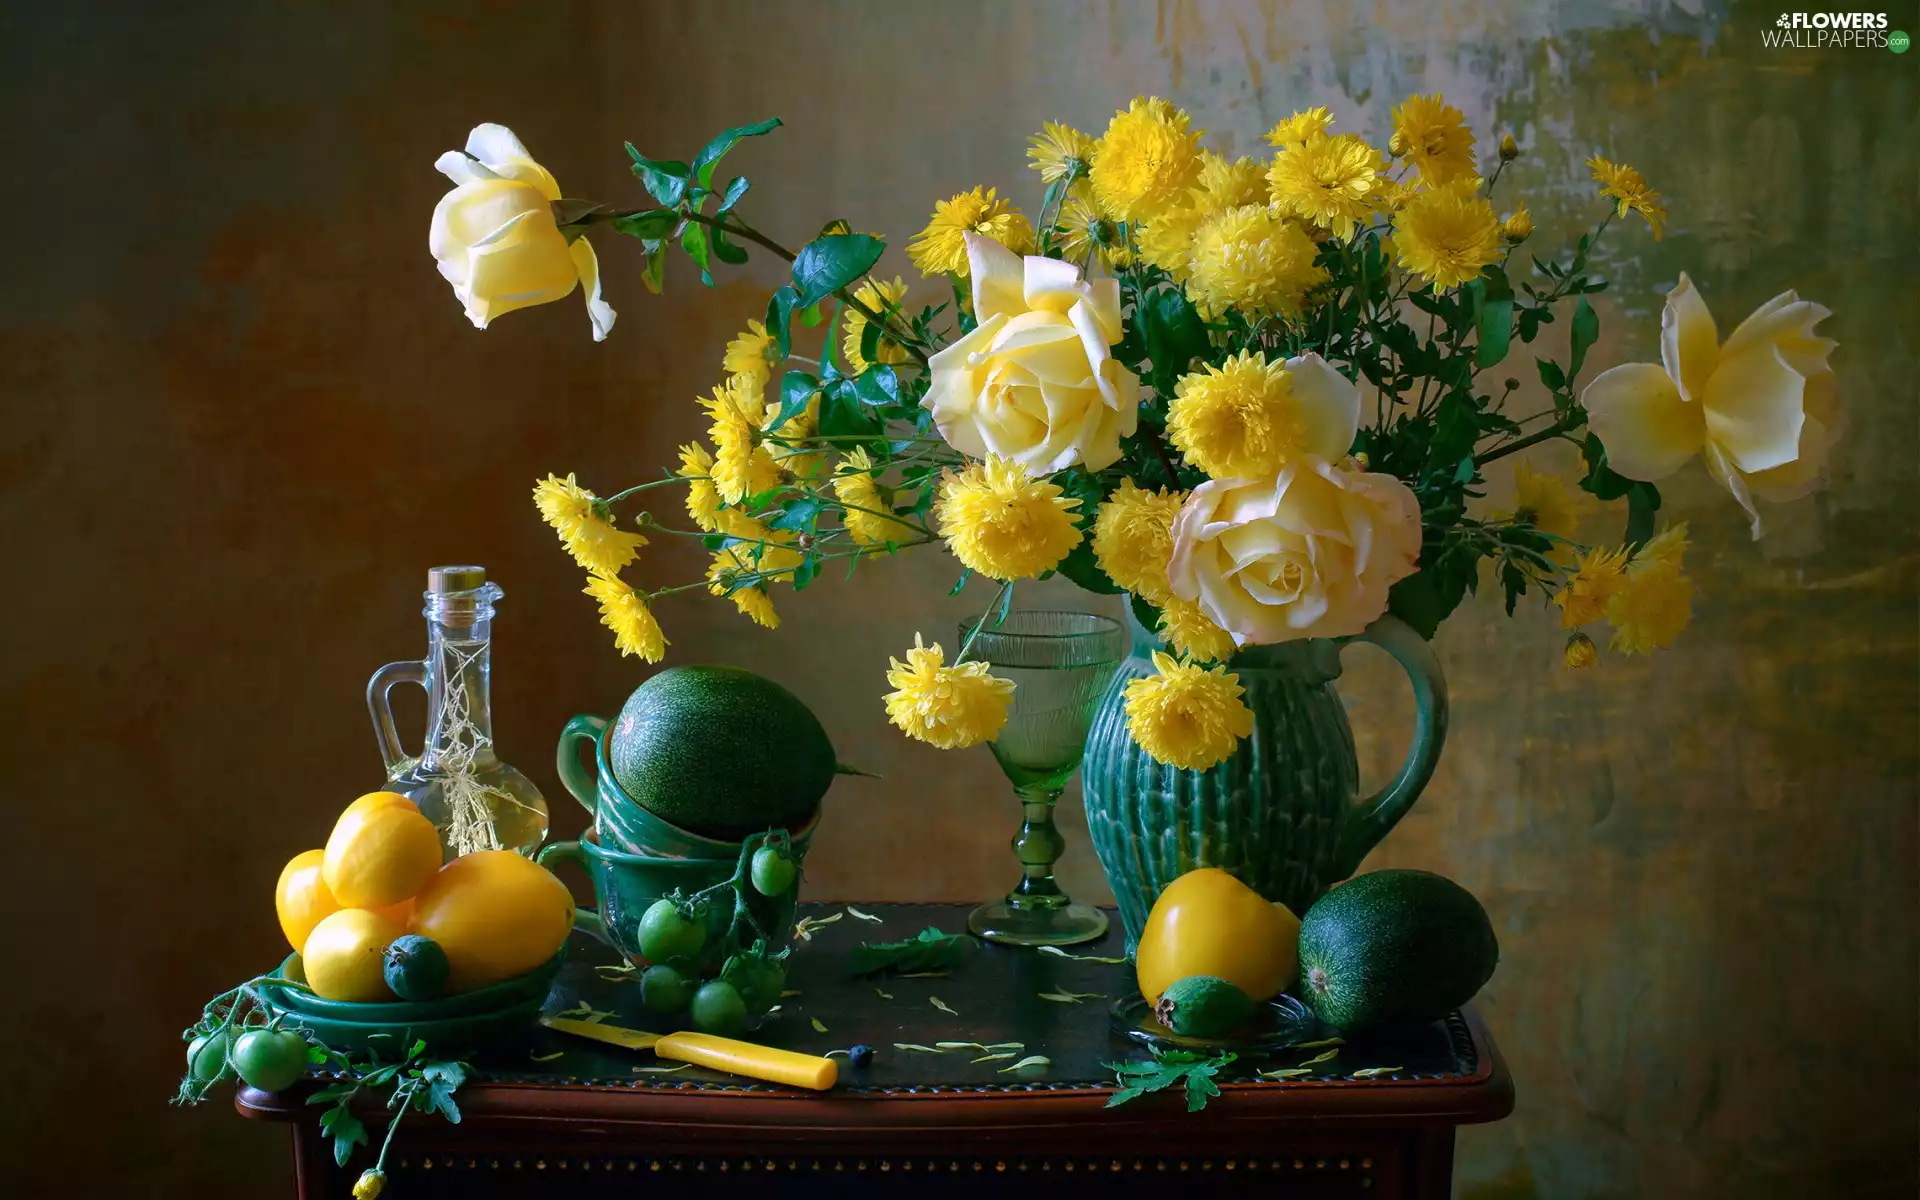 roses, jug, vegetables, Flowers, bouquet, chrysanthemum, composition